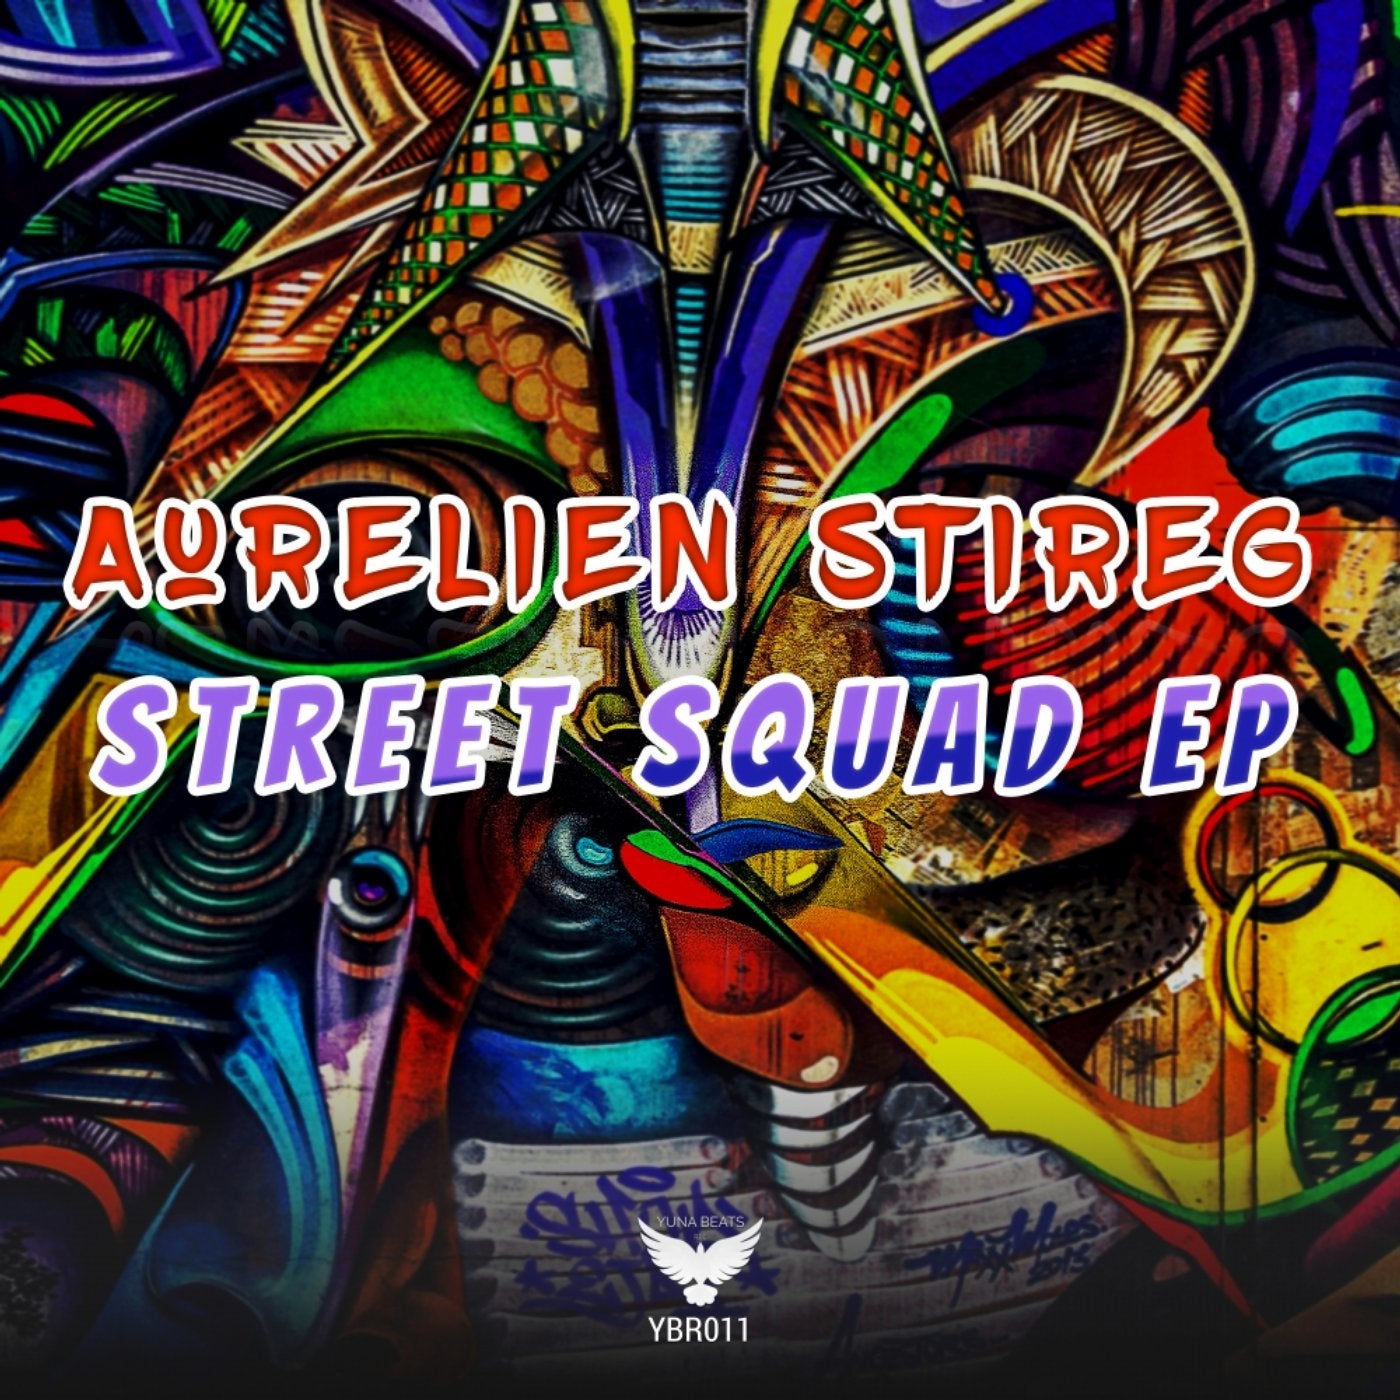 Street Squad EP